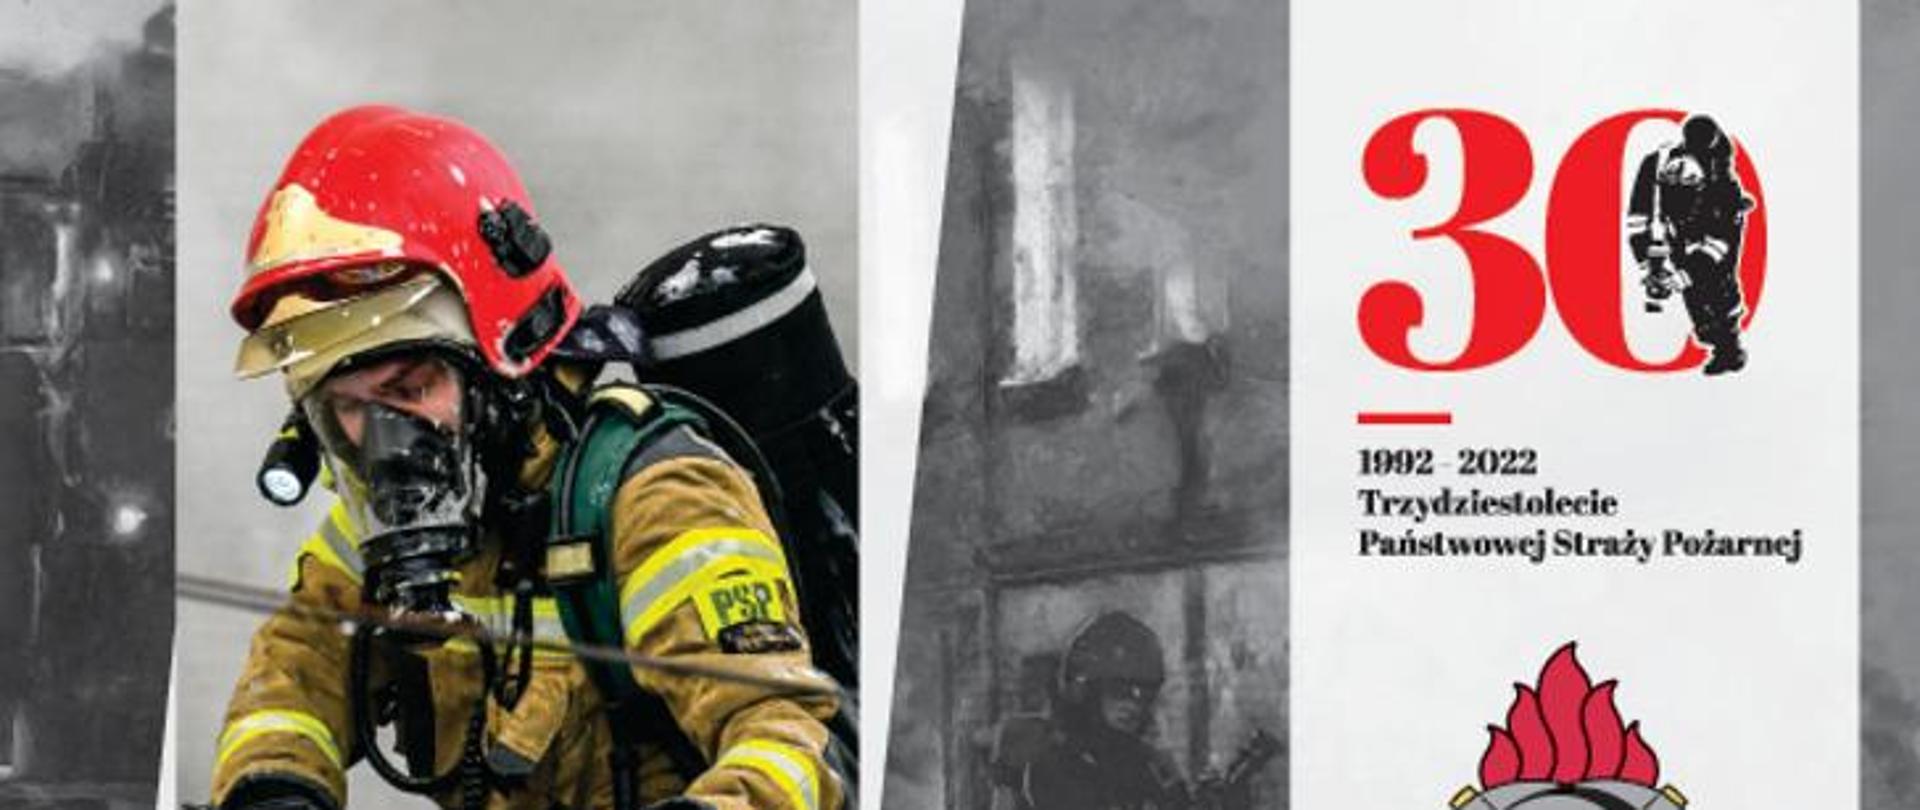 Zdjęcie z kalendarza na rok 2022 przedstawiające strażaka w ubraniu specjalnym